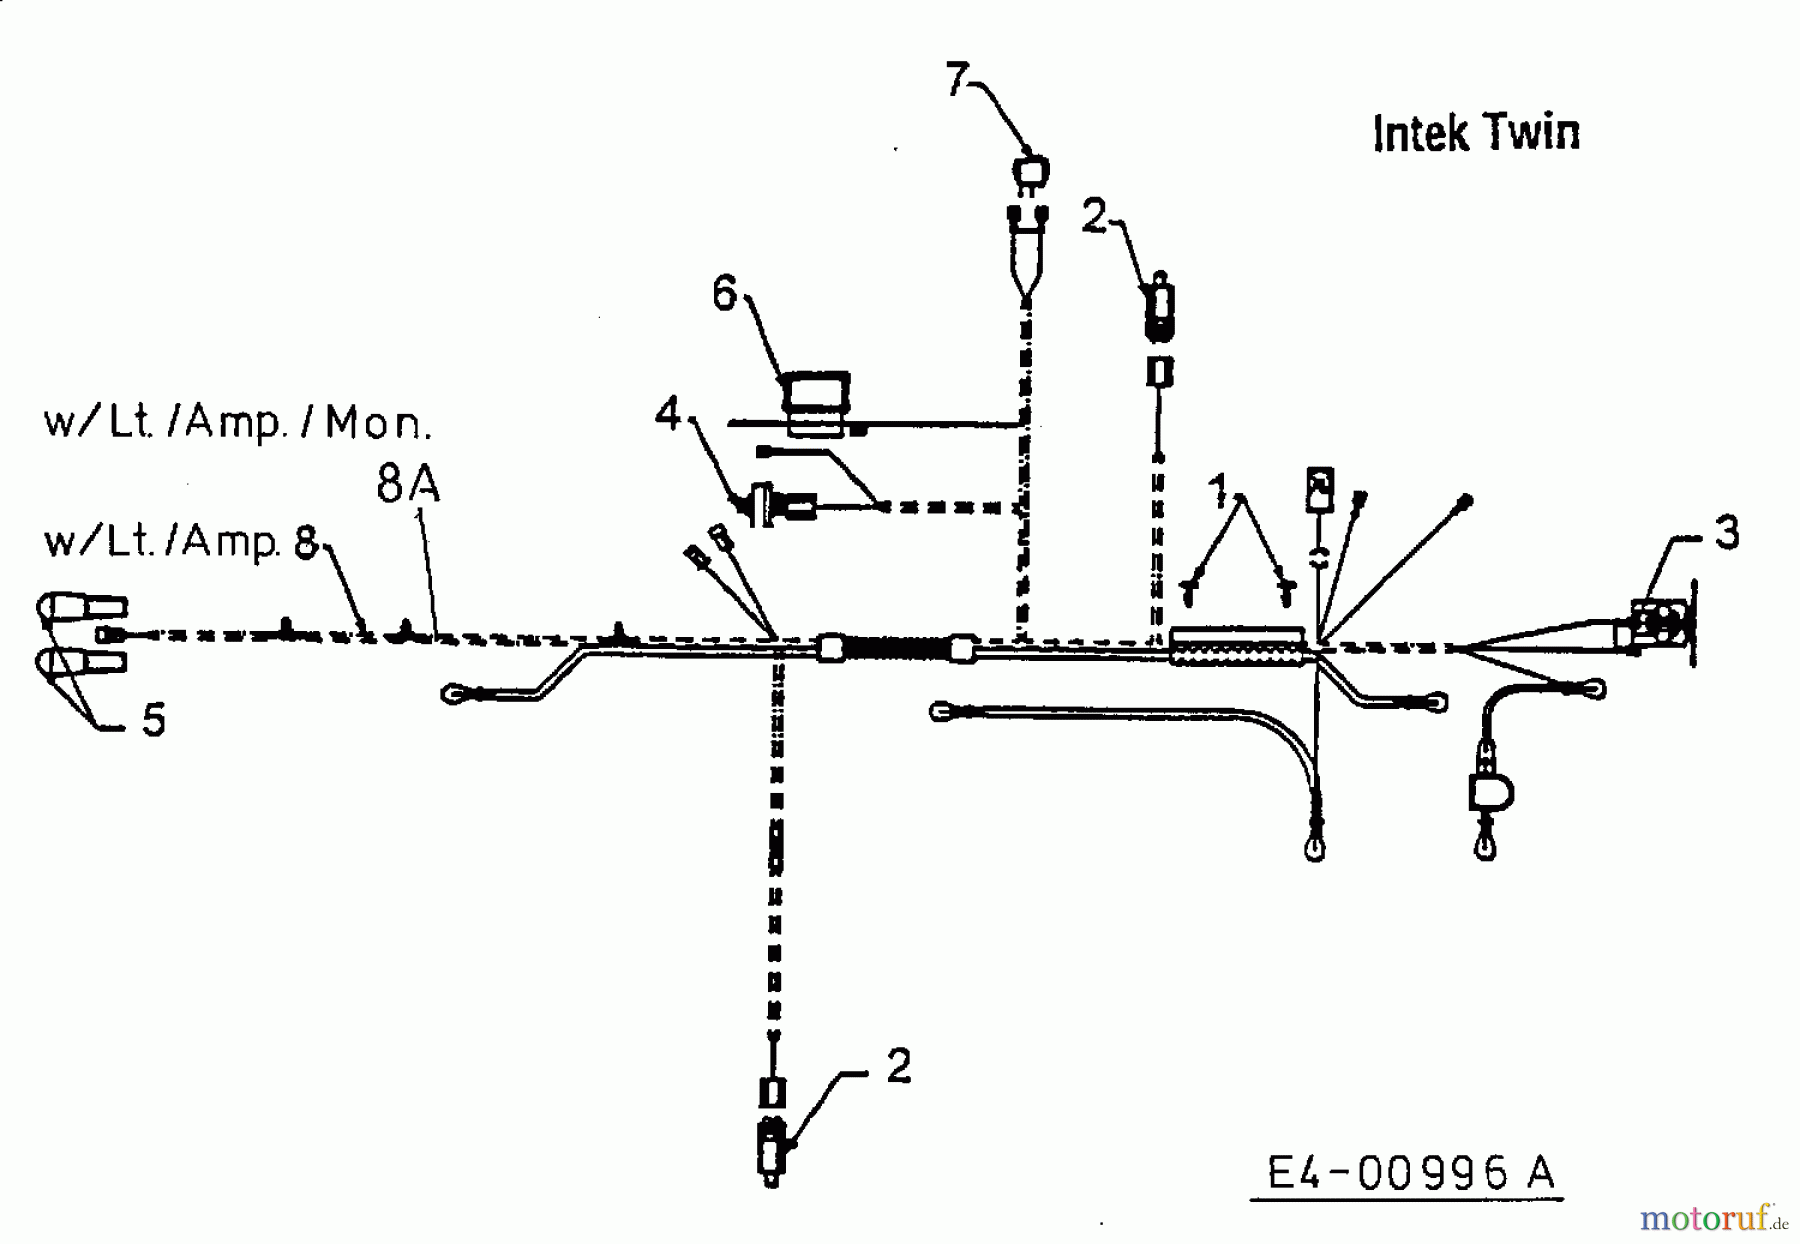  MTD Lawn tractors H 145 13AA698F678  (2000) Wiring diagram Intek Twin